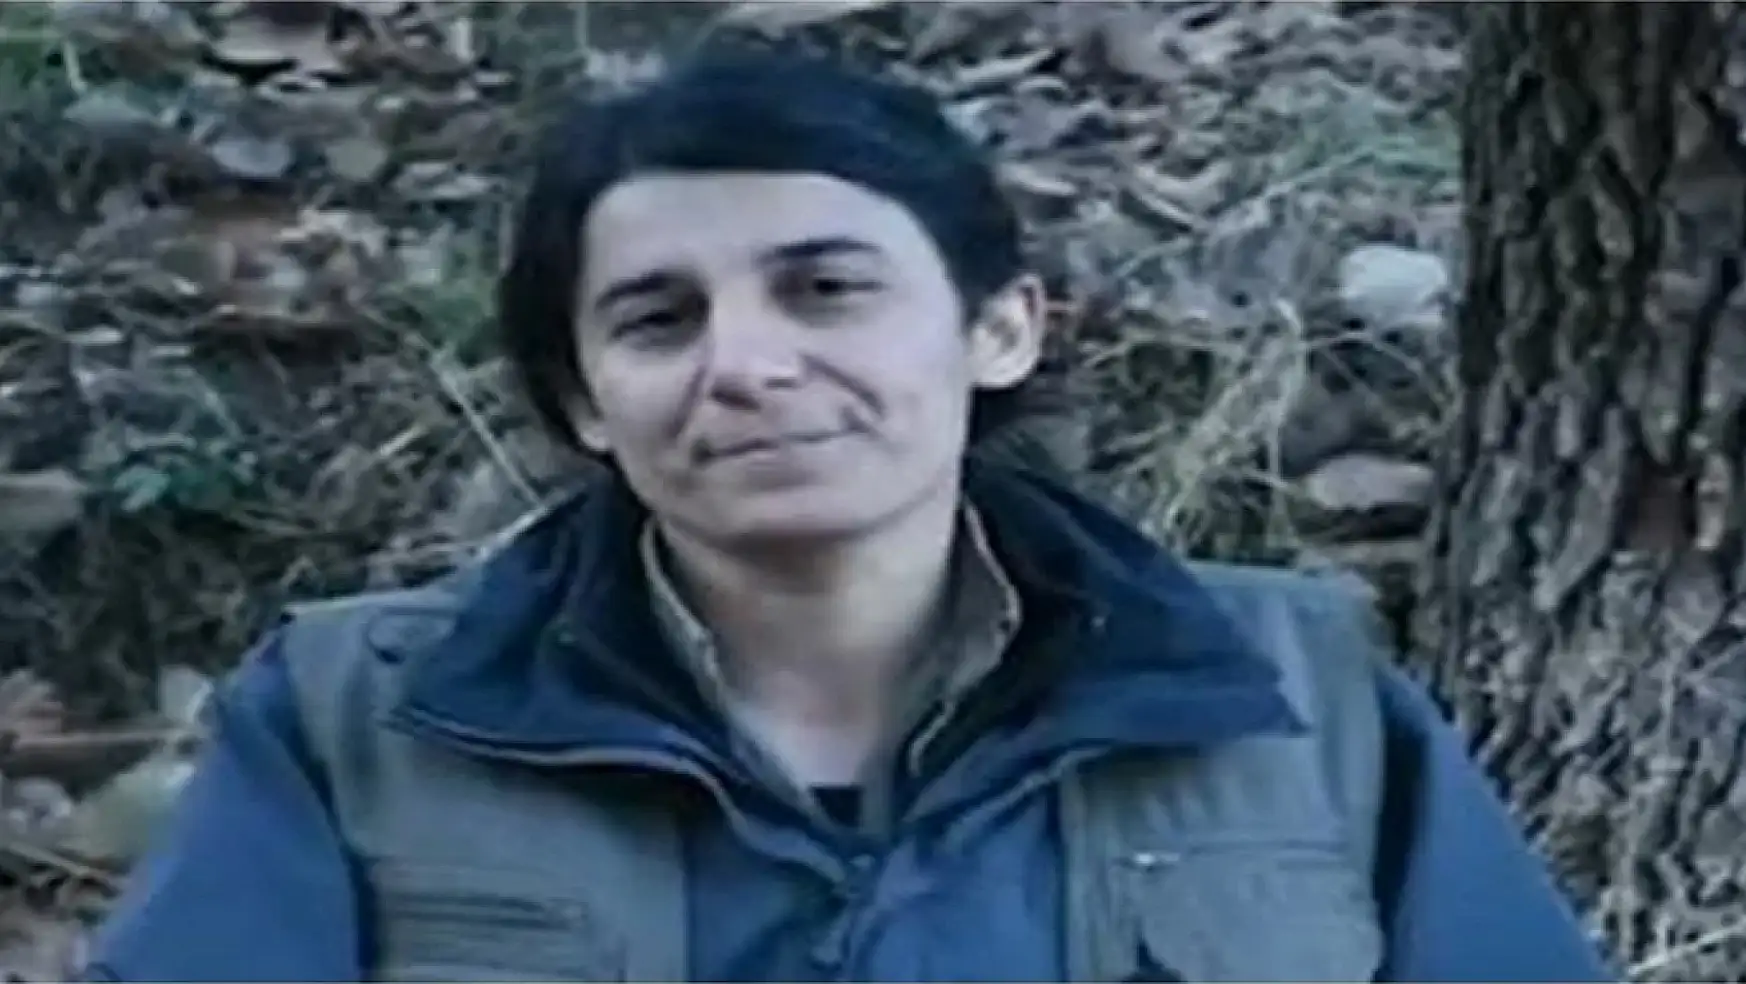 MİT PKK/KCK'nın Sözde Gençlik Yapılanmasından Sorumlu Gülsün Silgir Öldürüldü